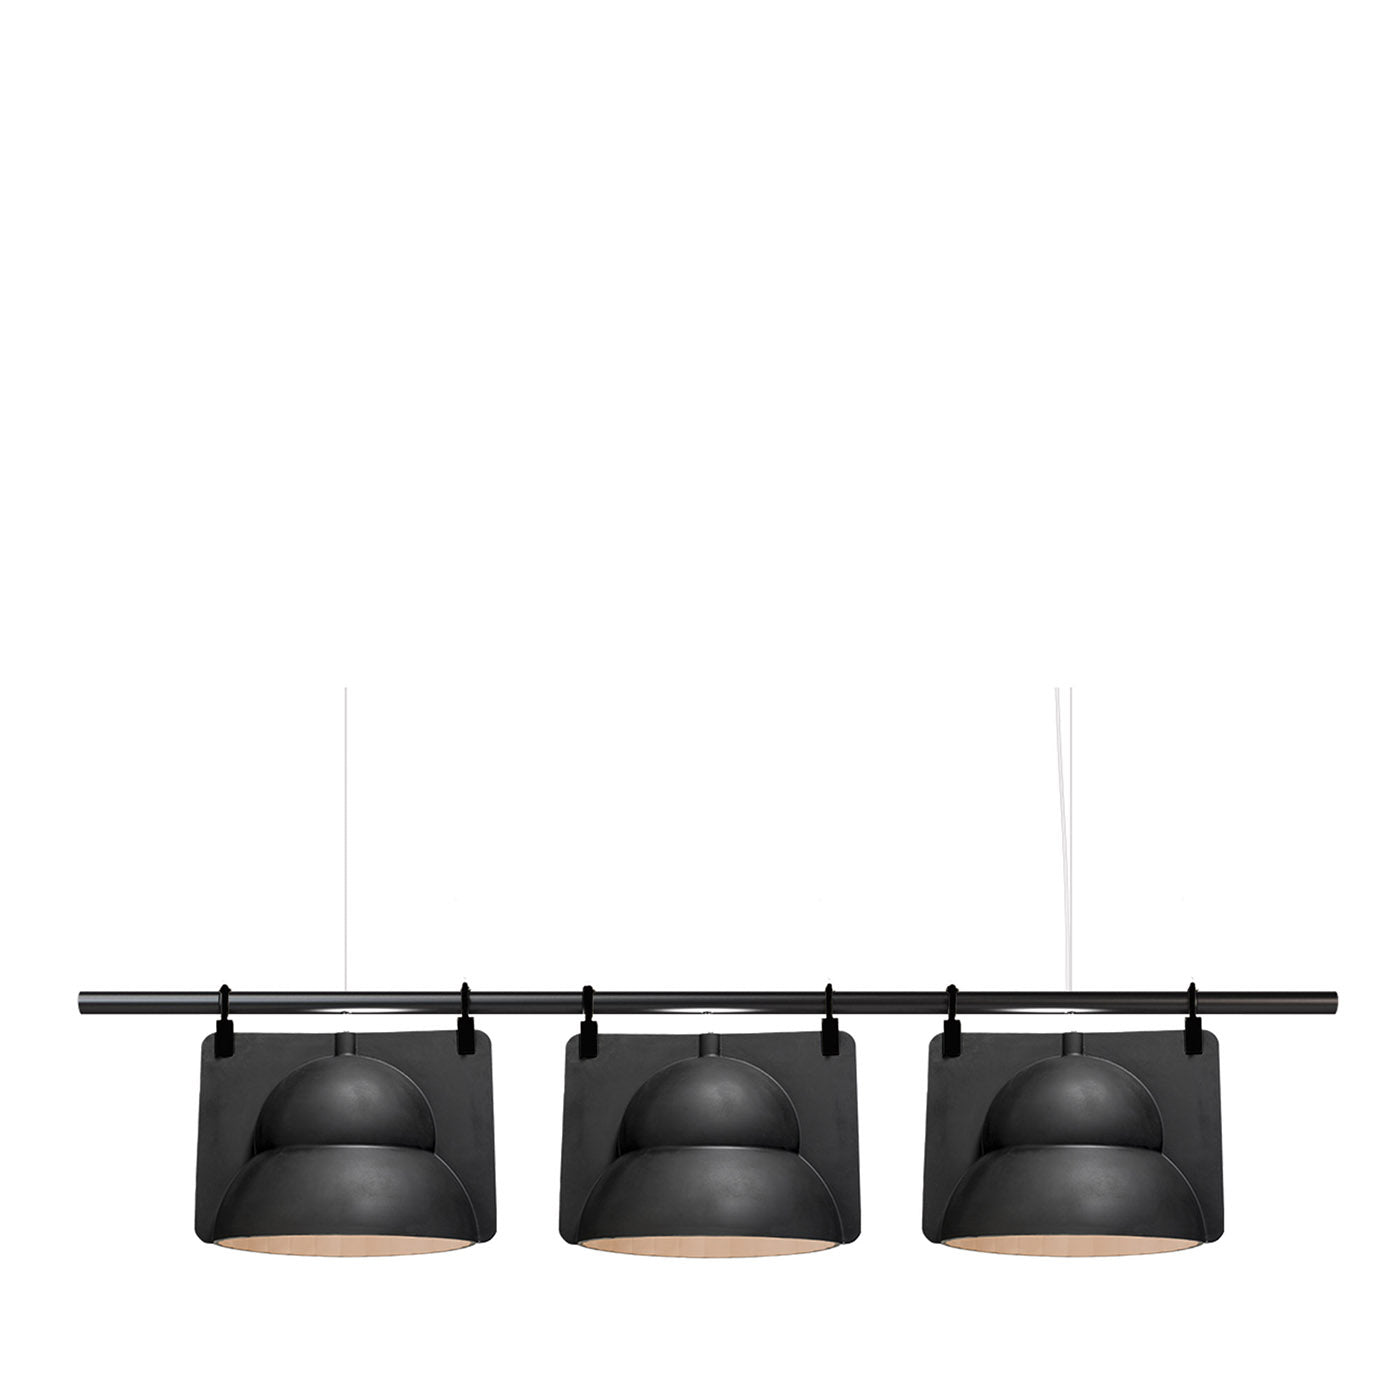  Black Street Lamp Hang Trio Ceiling Lamp - Main view